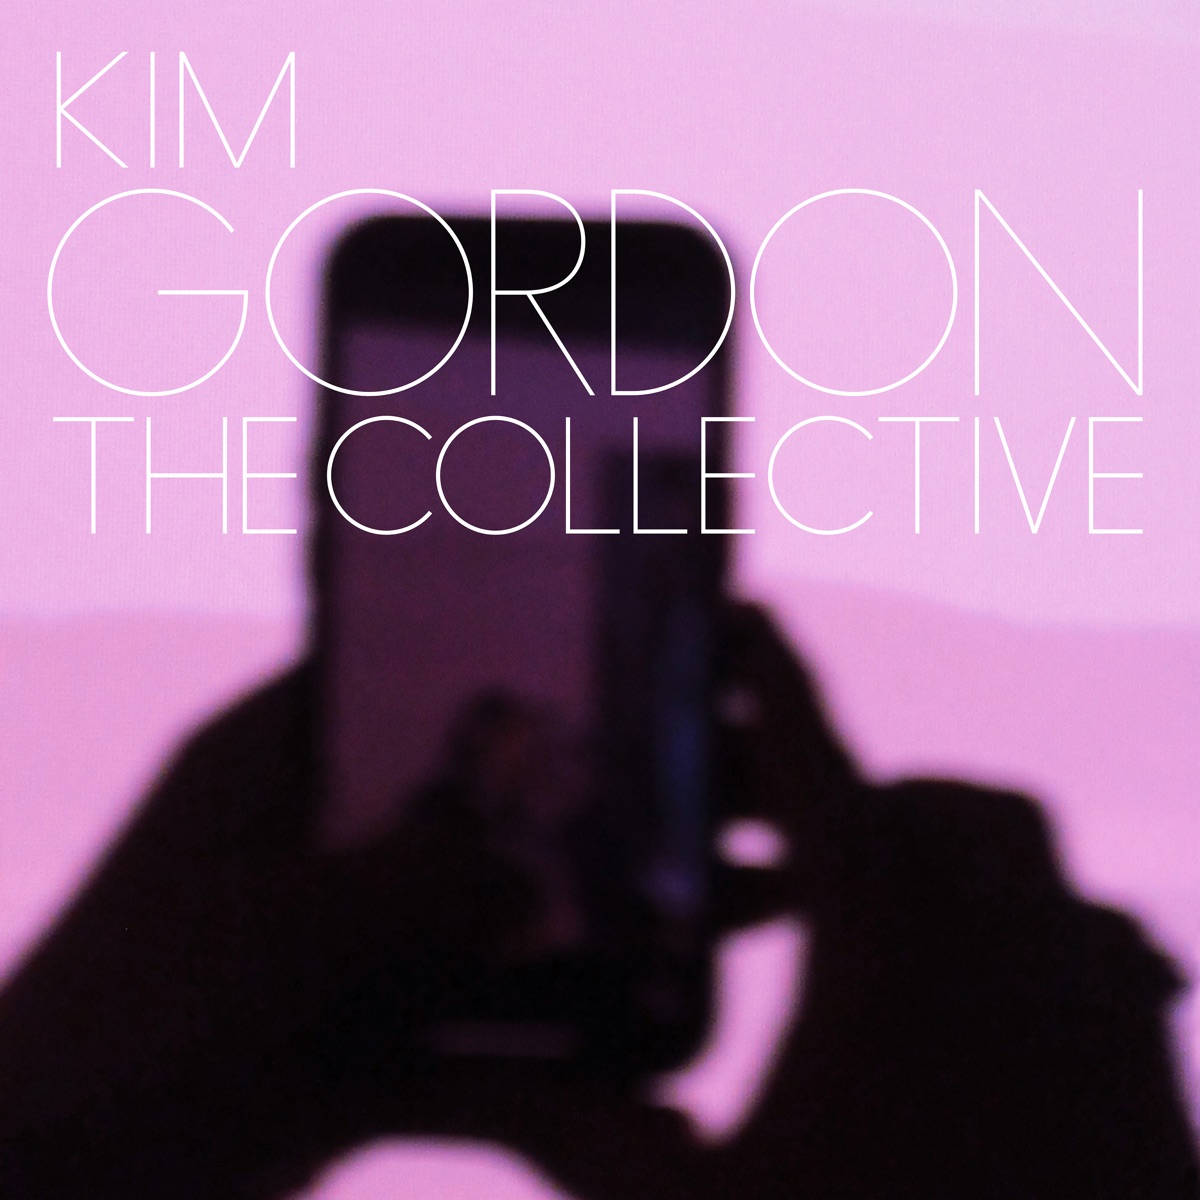 GORDON, KIM - THE COLLECTIVE (EDITION LIMITEE VINYLE VERT TRANSPARENT) - LP 01